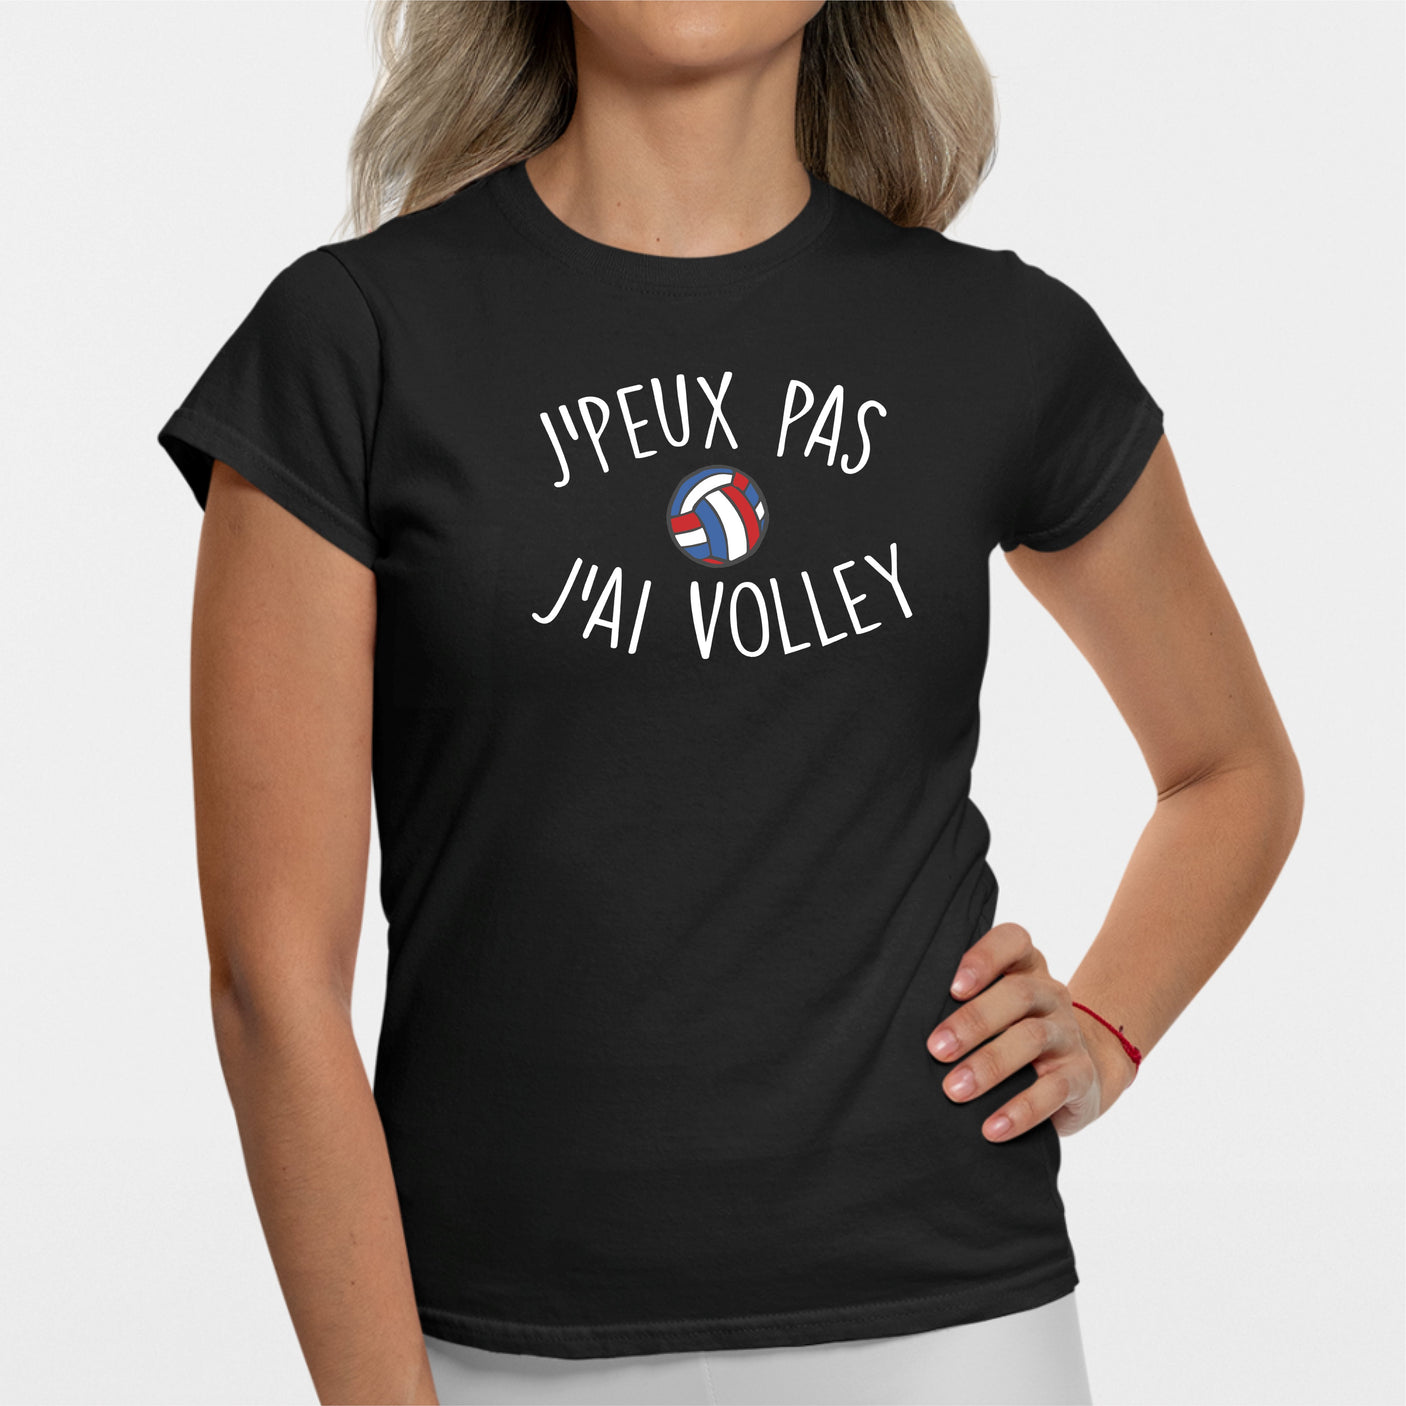 T-Shirt Femme J'peux pas j'ai volley Noir